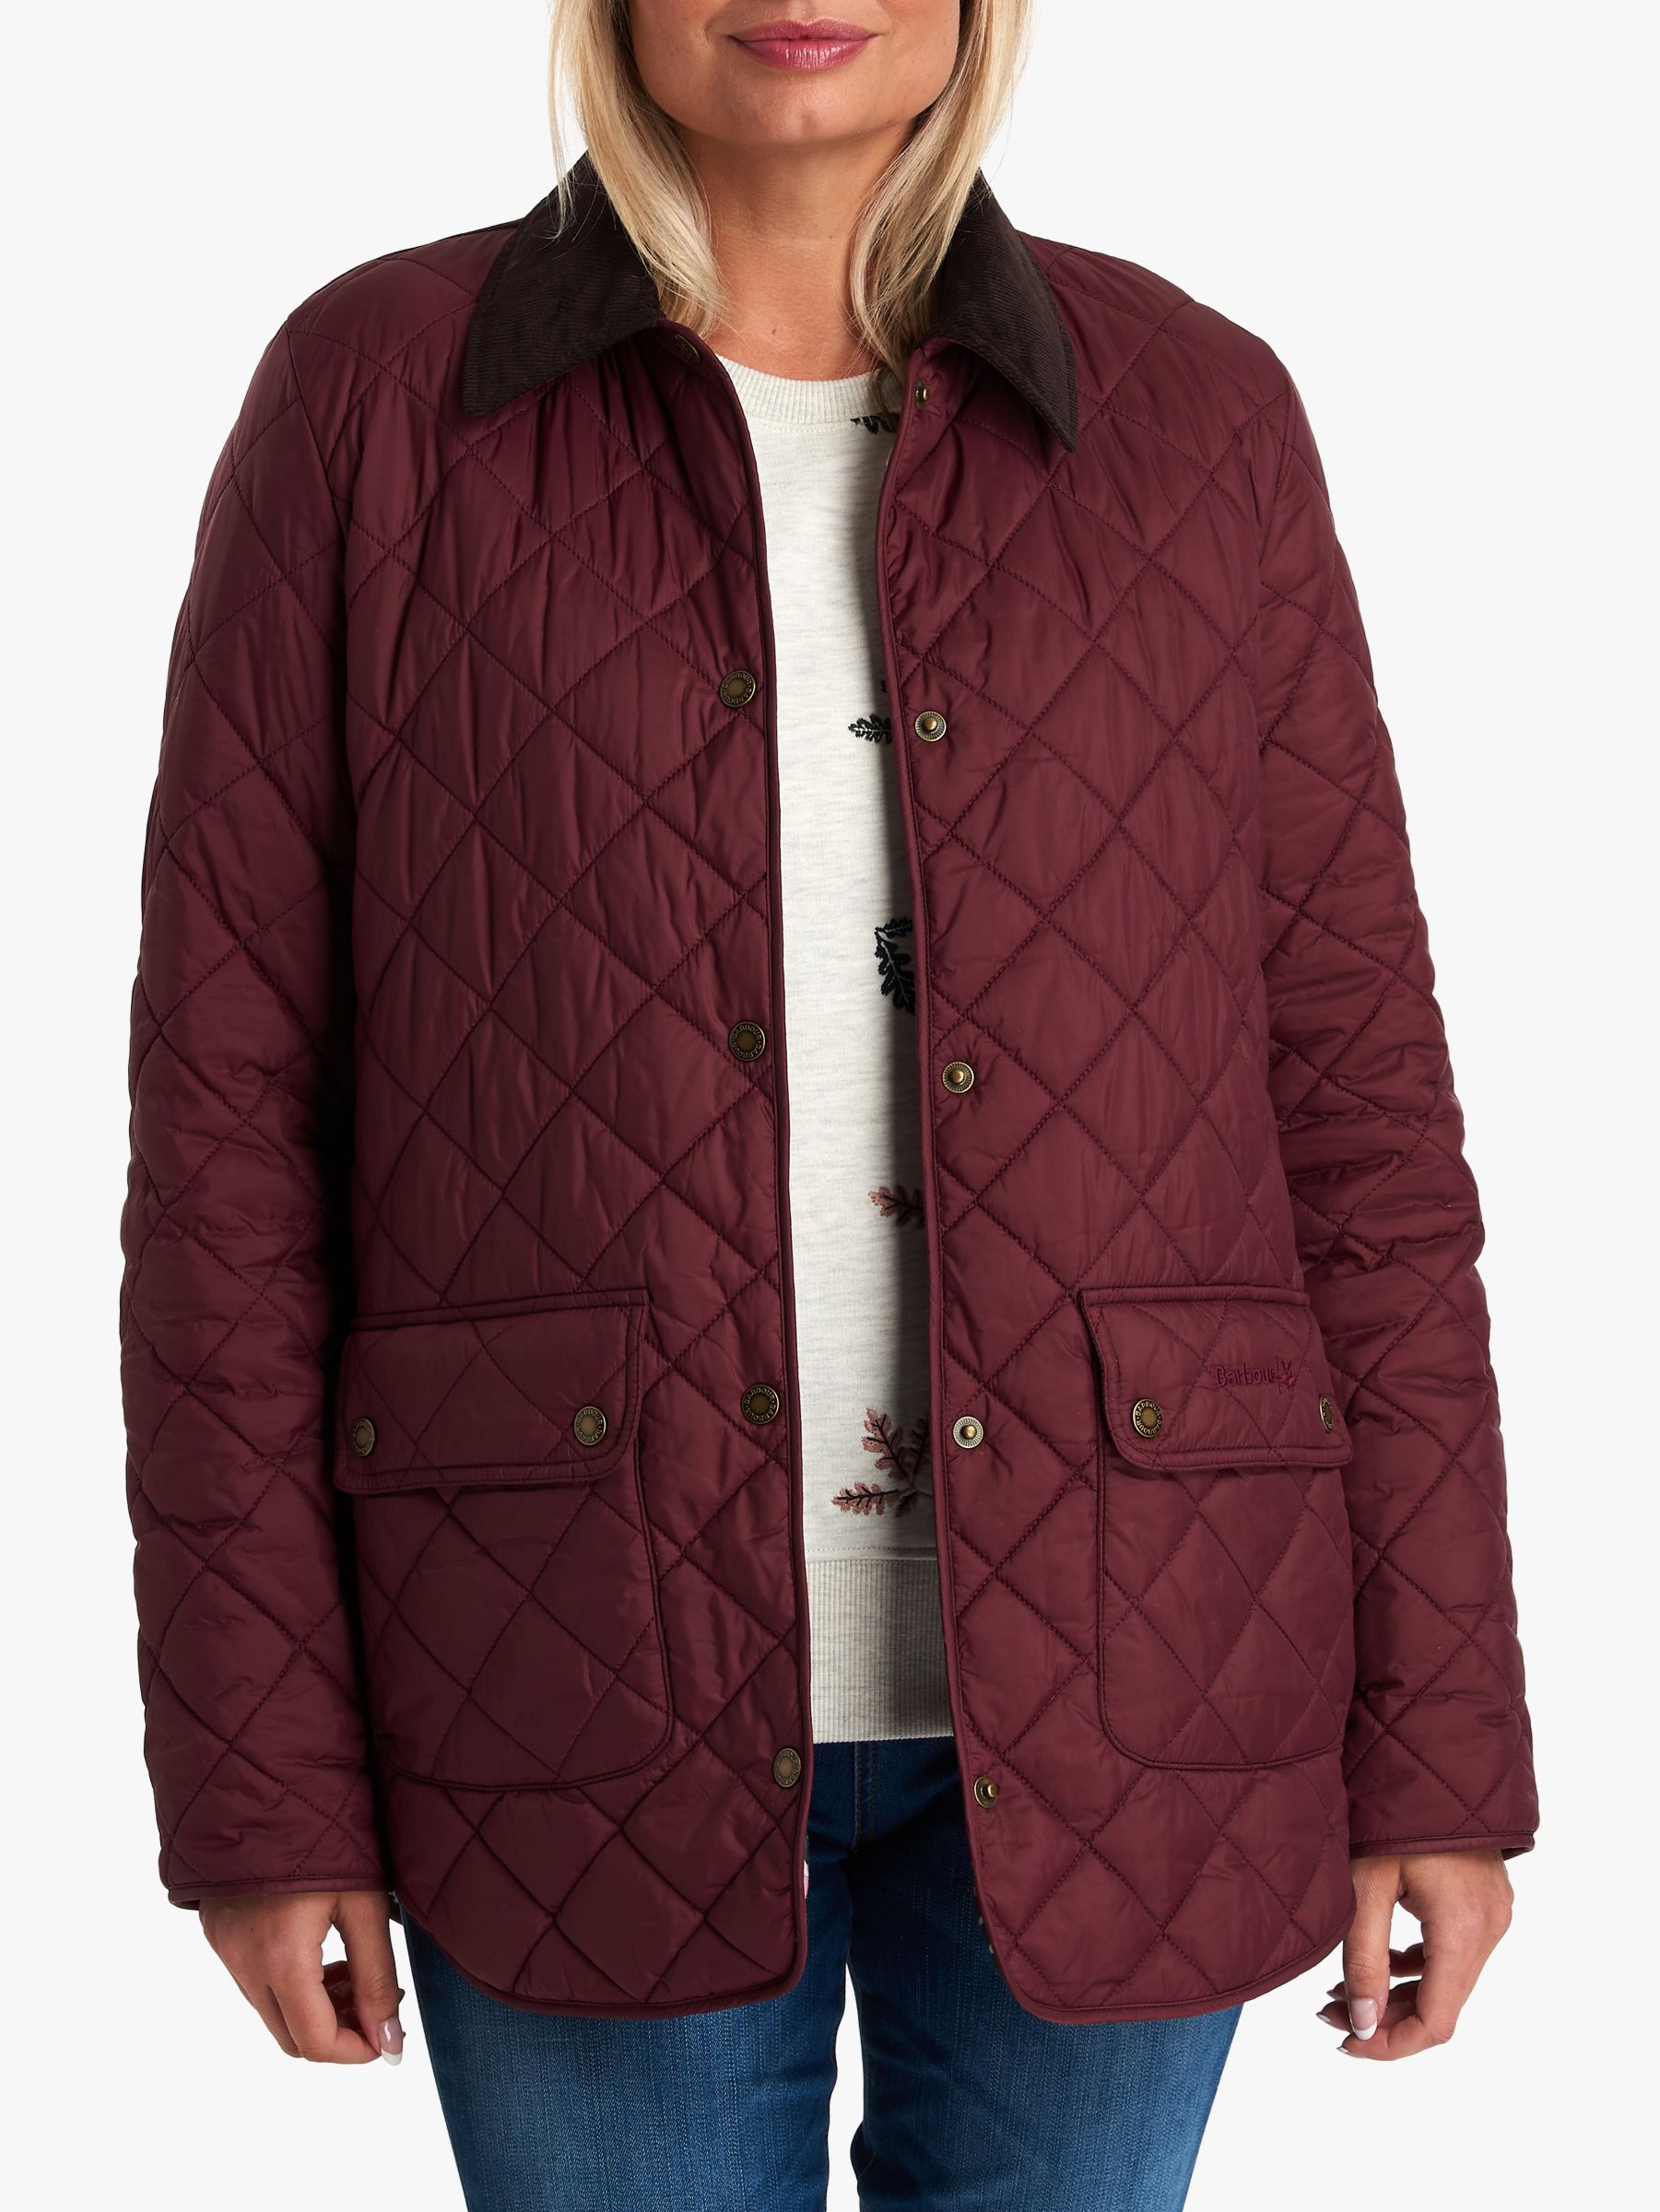 barbour burgundy jacket